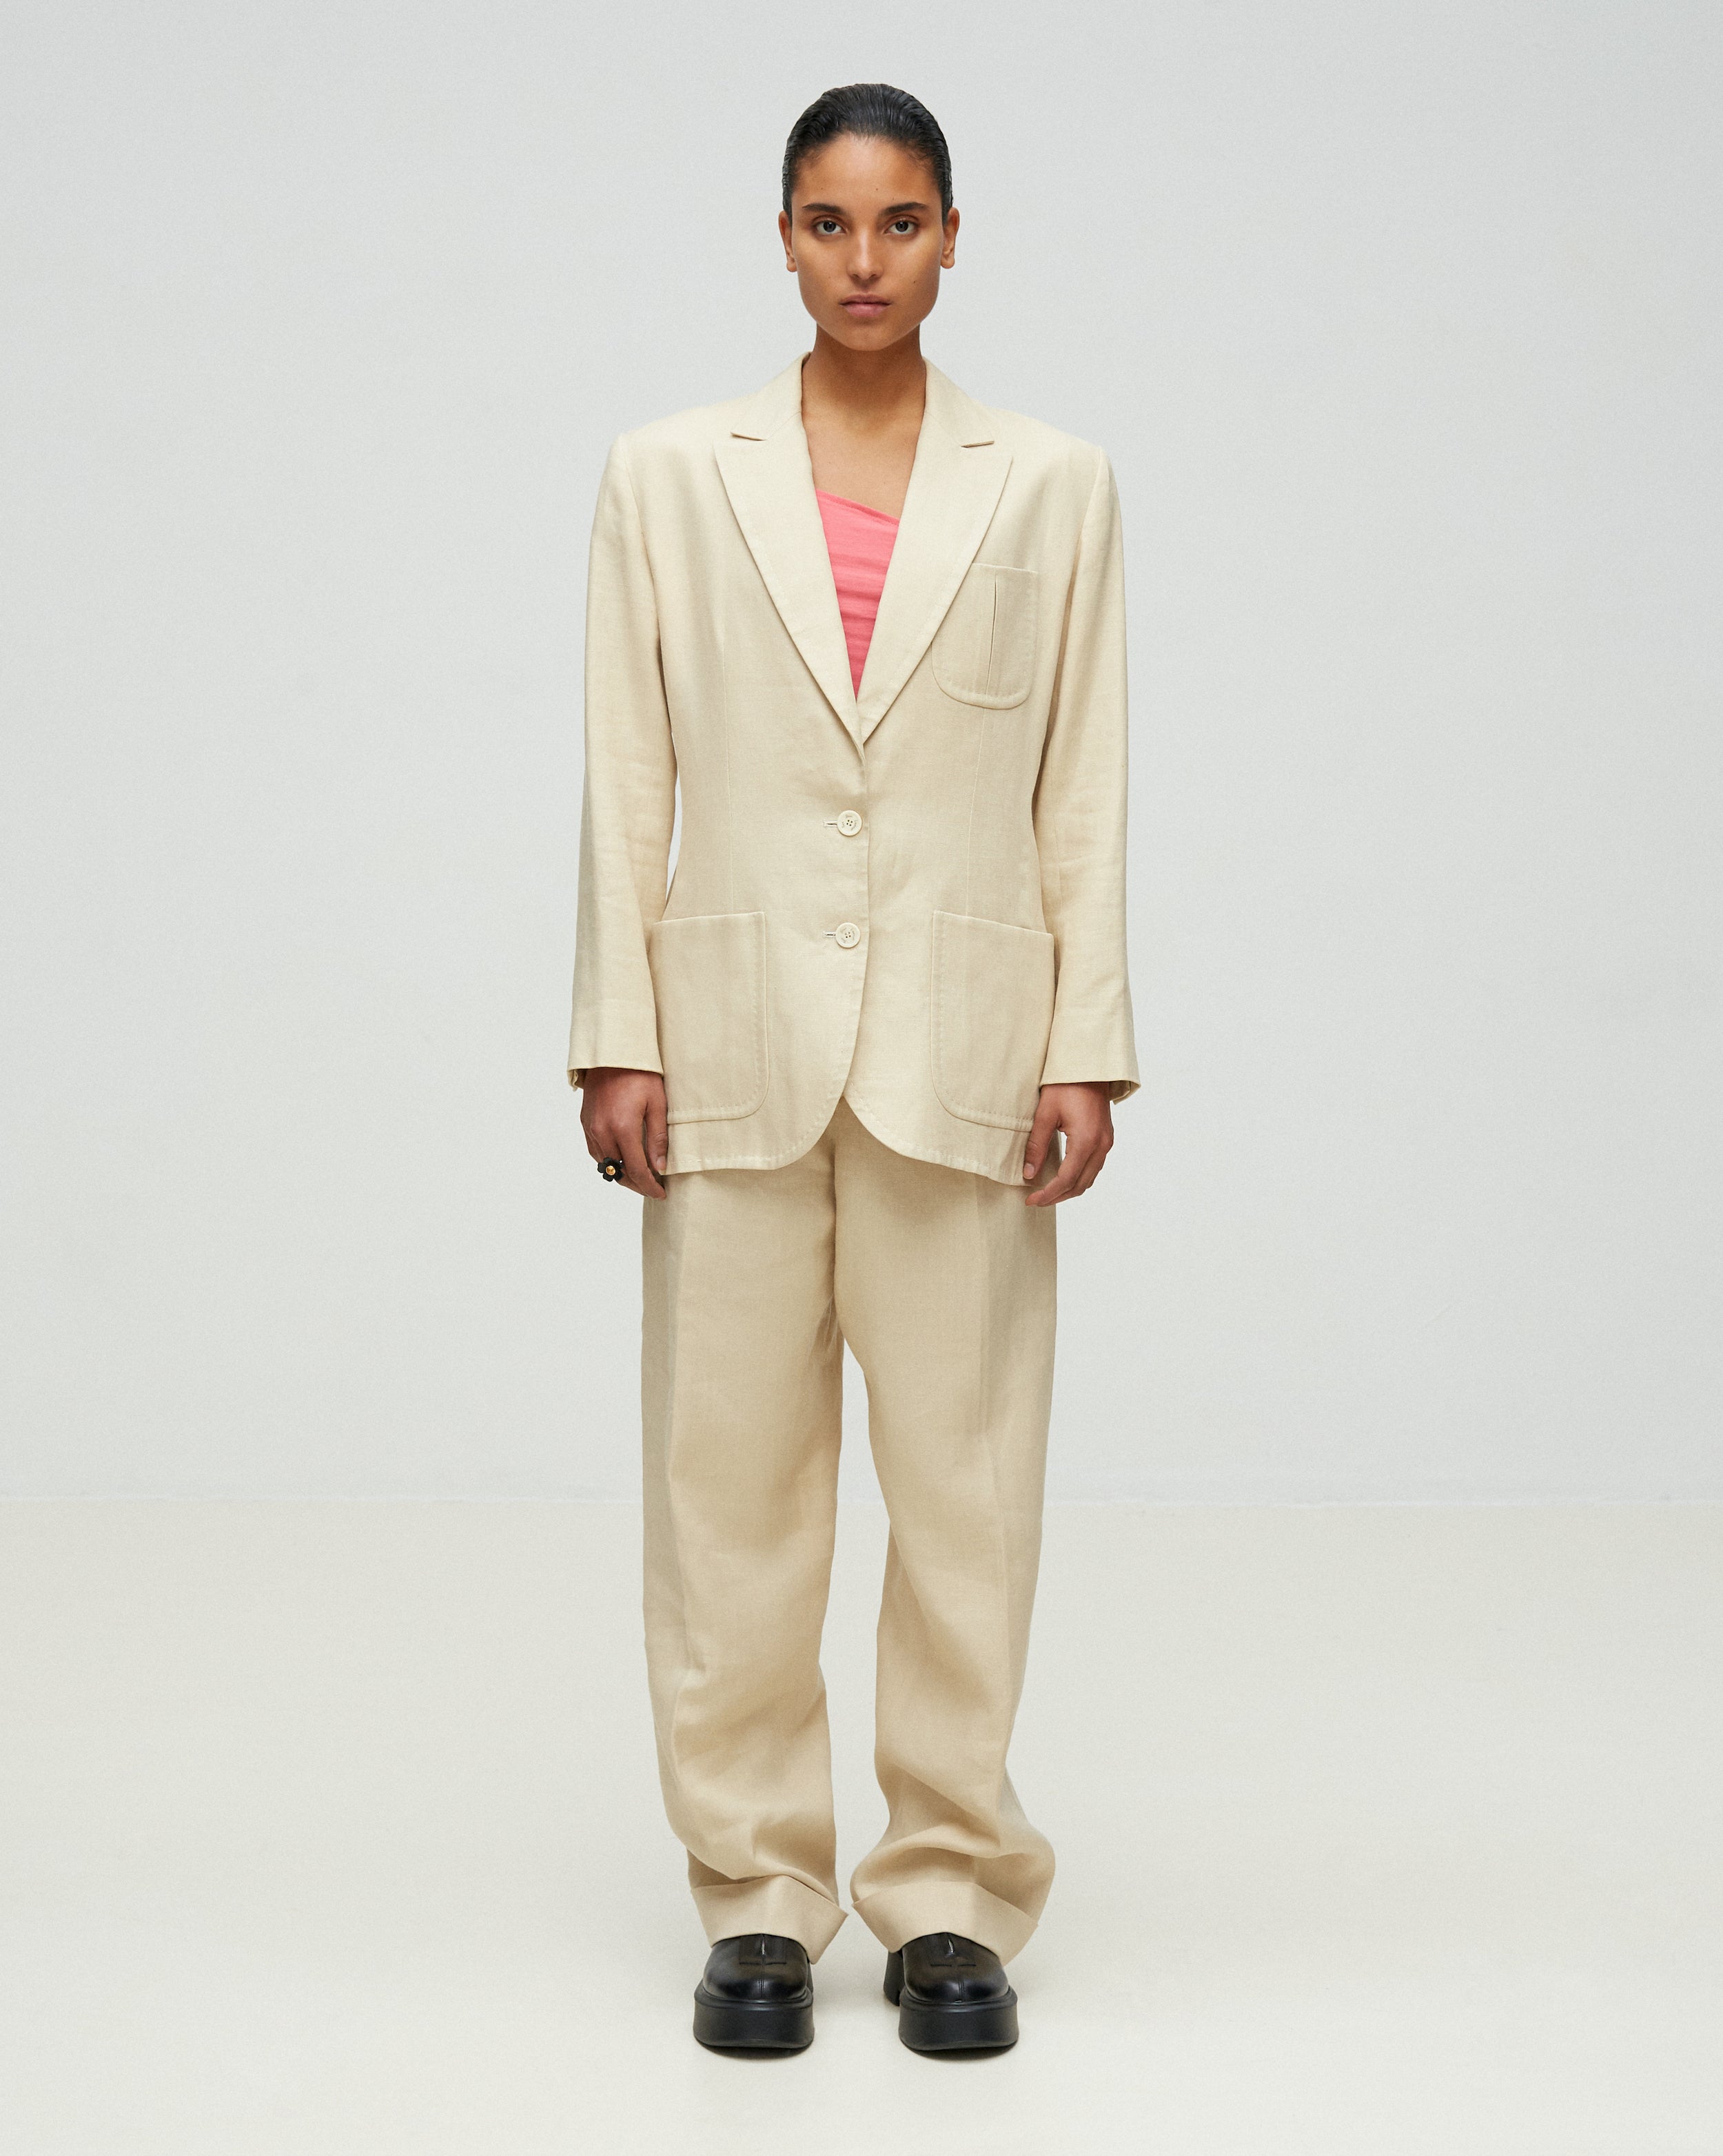 Yves Saint Laurent, Suits & Blazers